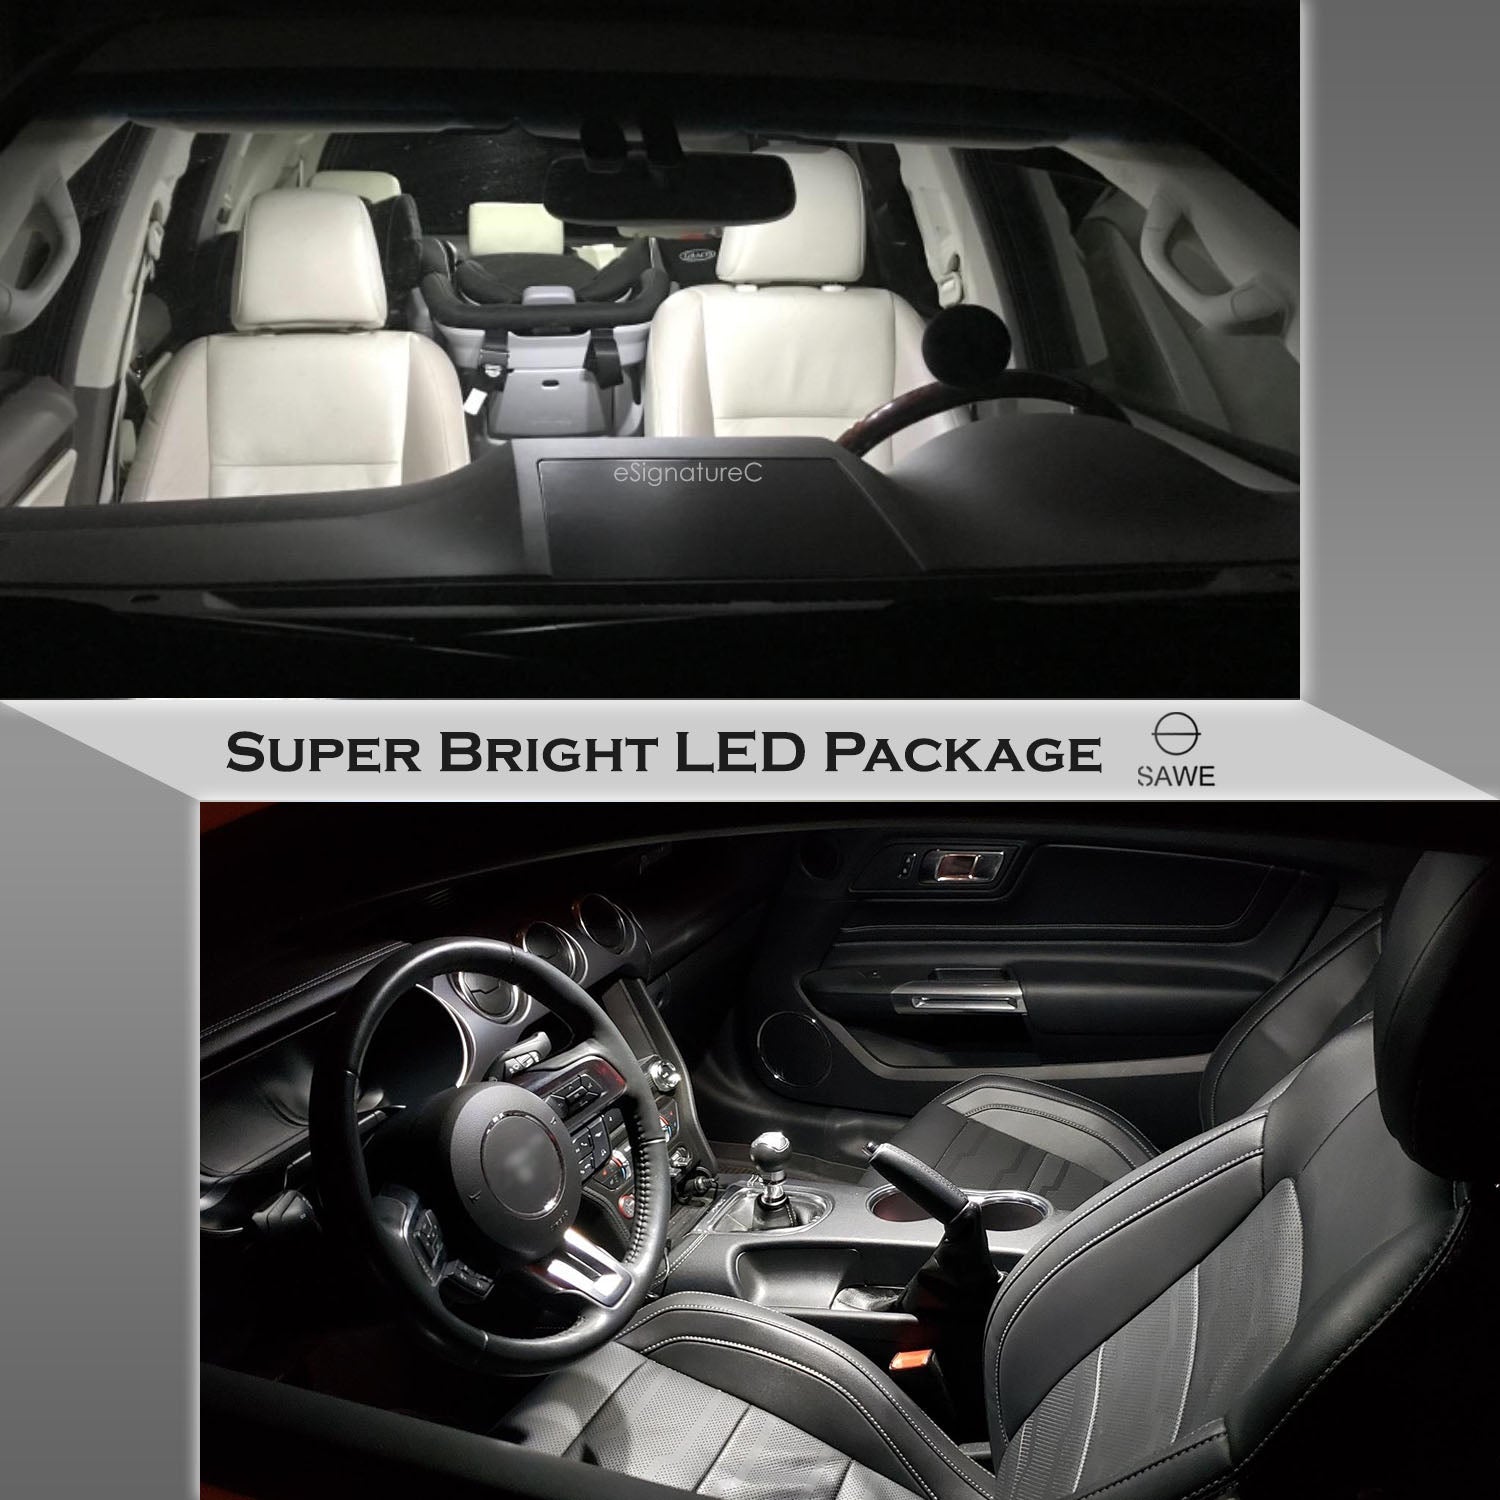 For Chrysler PT Cruiser Interior LED Lights - Dome & Map Light Bulbs Package Kit for 2001 - 2010 - White